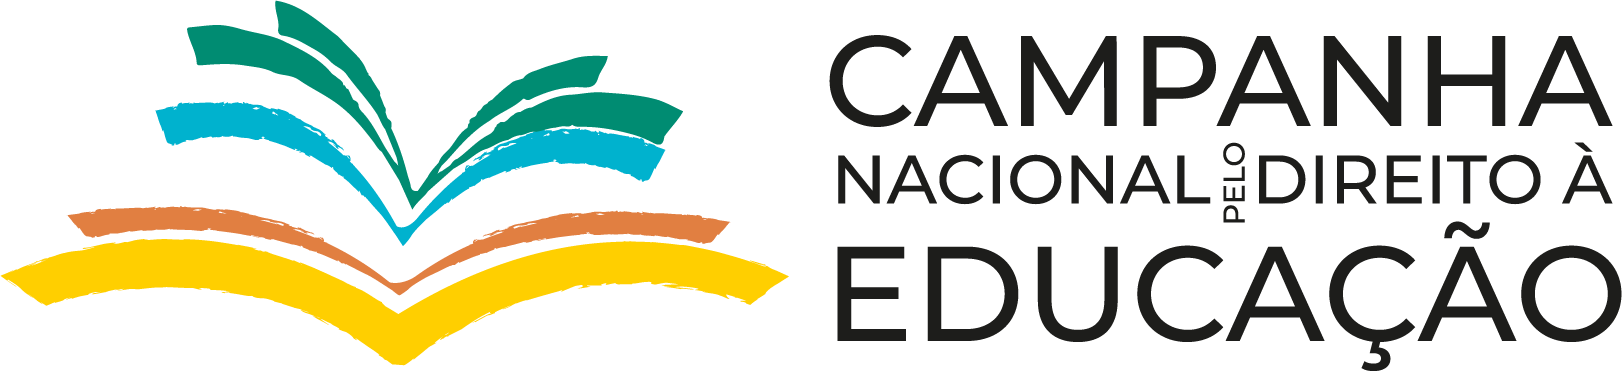 Campanha Nacional pelo Direito à Educação de Brasil